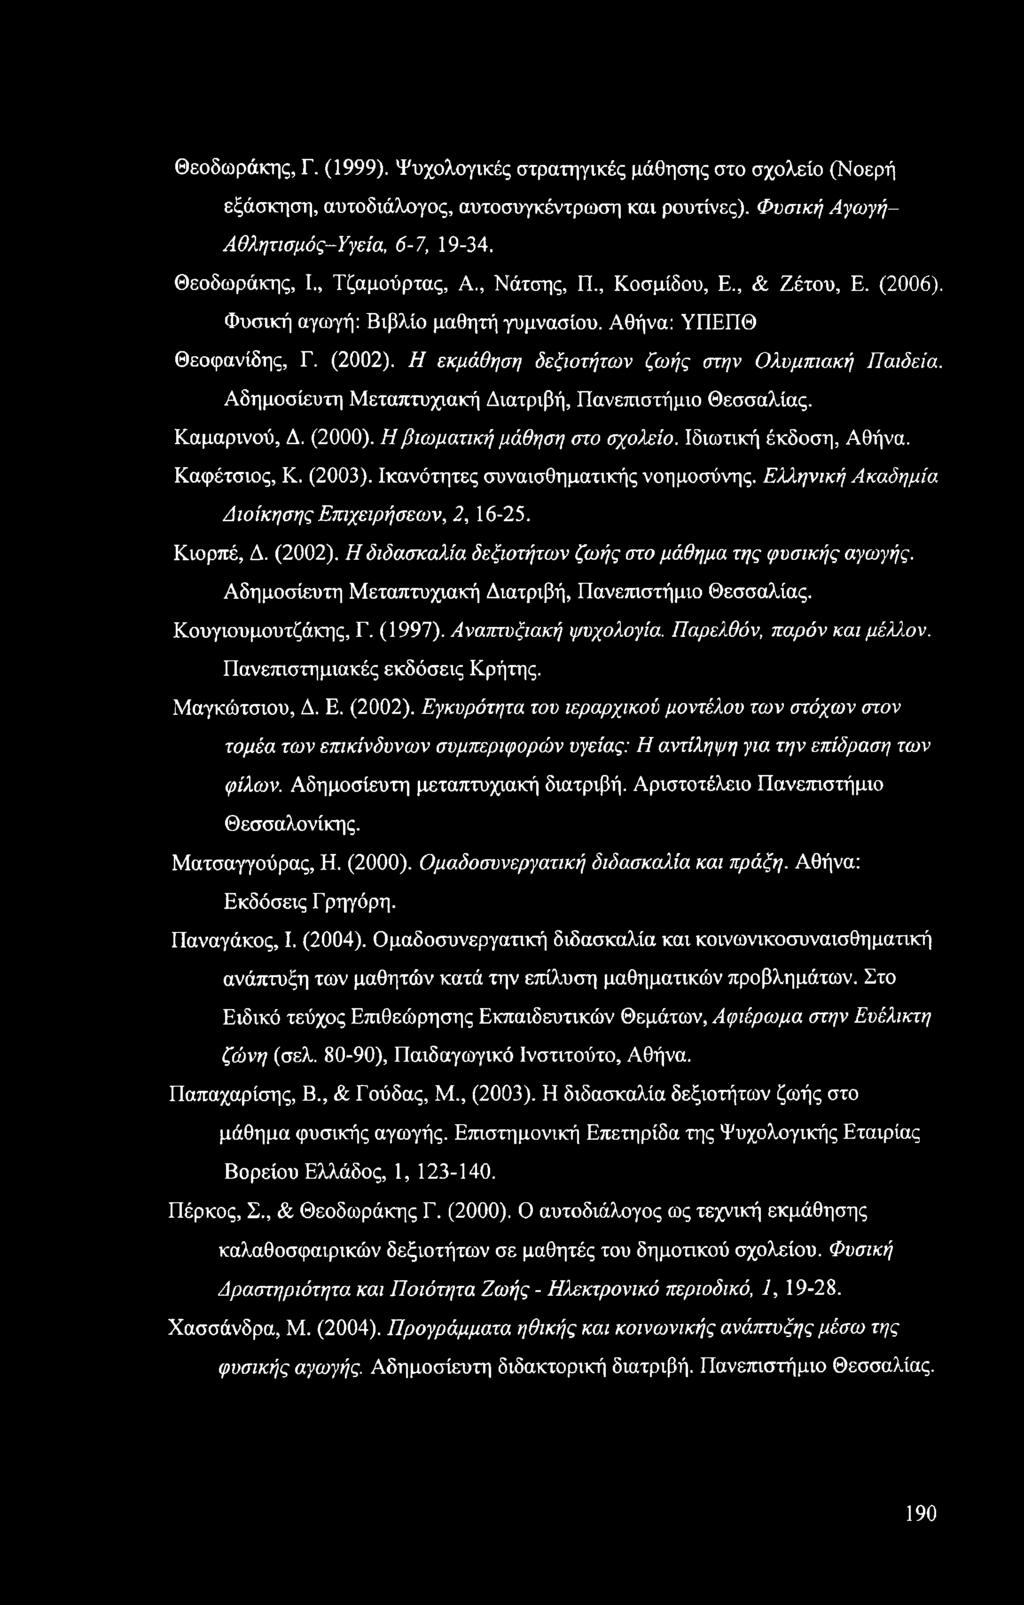 Αδημοσίευτη Μεταπτυχιακή Διατριβή, Πανεπιστήμιο Θεσσαλίας. Καμαρινού, Δ. (2000). Η βιωματική μάθηση στο σχολείο. Ιδιωτική έκδοση, Αθήνα. Καφέτσιος, Κ. (2003). Ικανότητες συναισθηματικής νοημοσύνης.